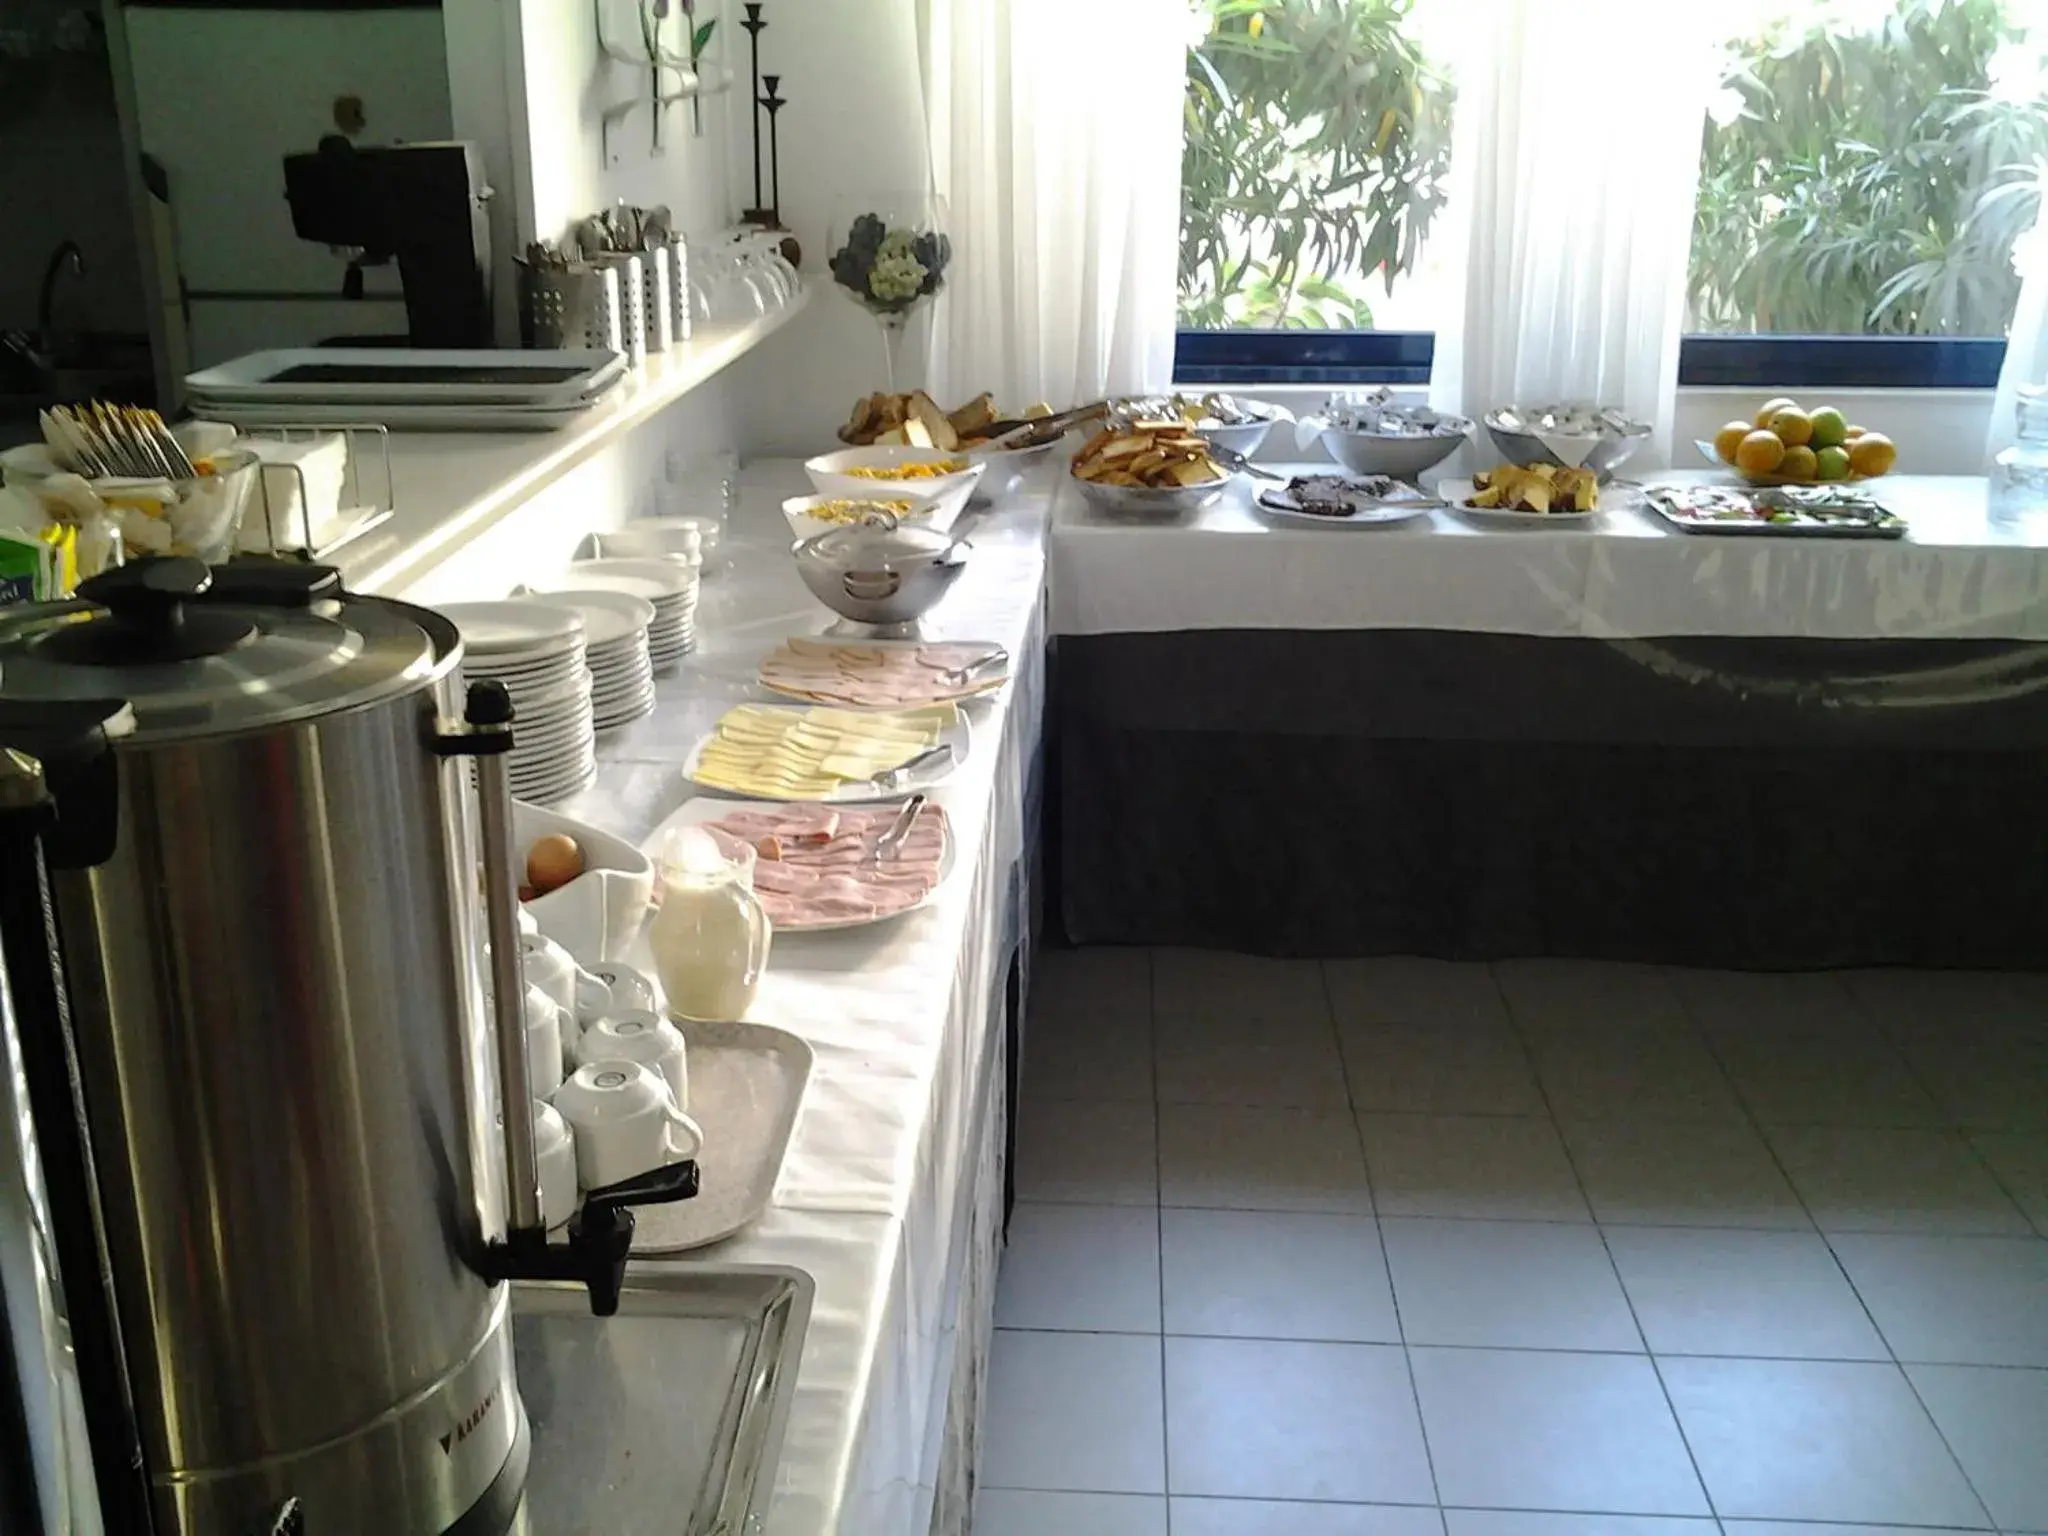 Buffet breakfast in Danaos Hotel